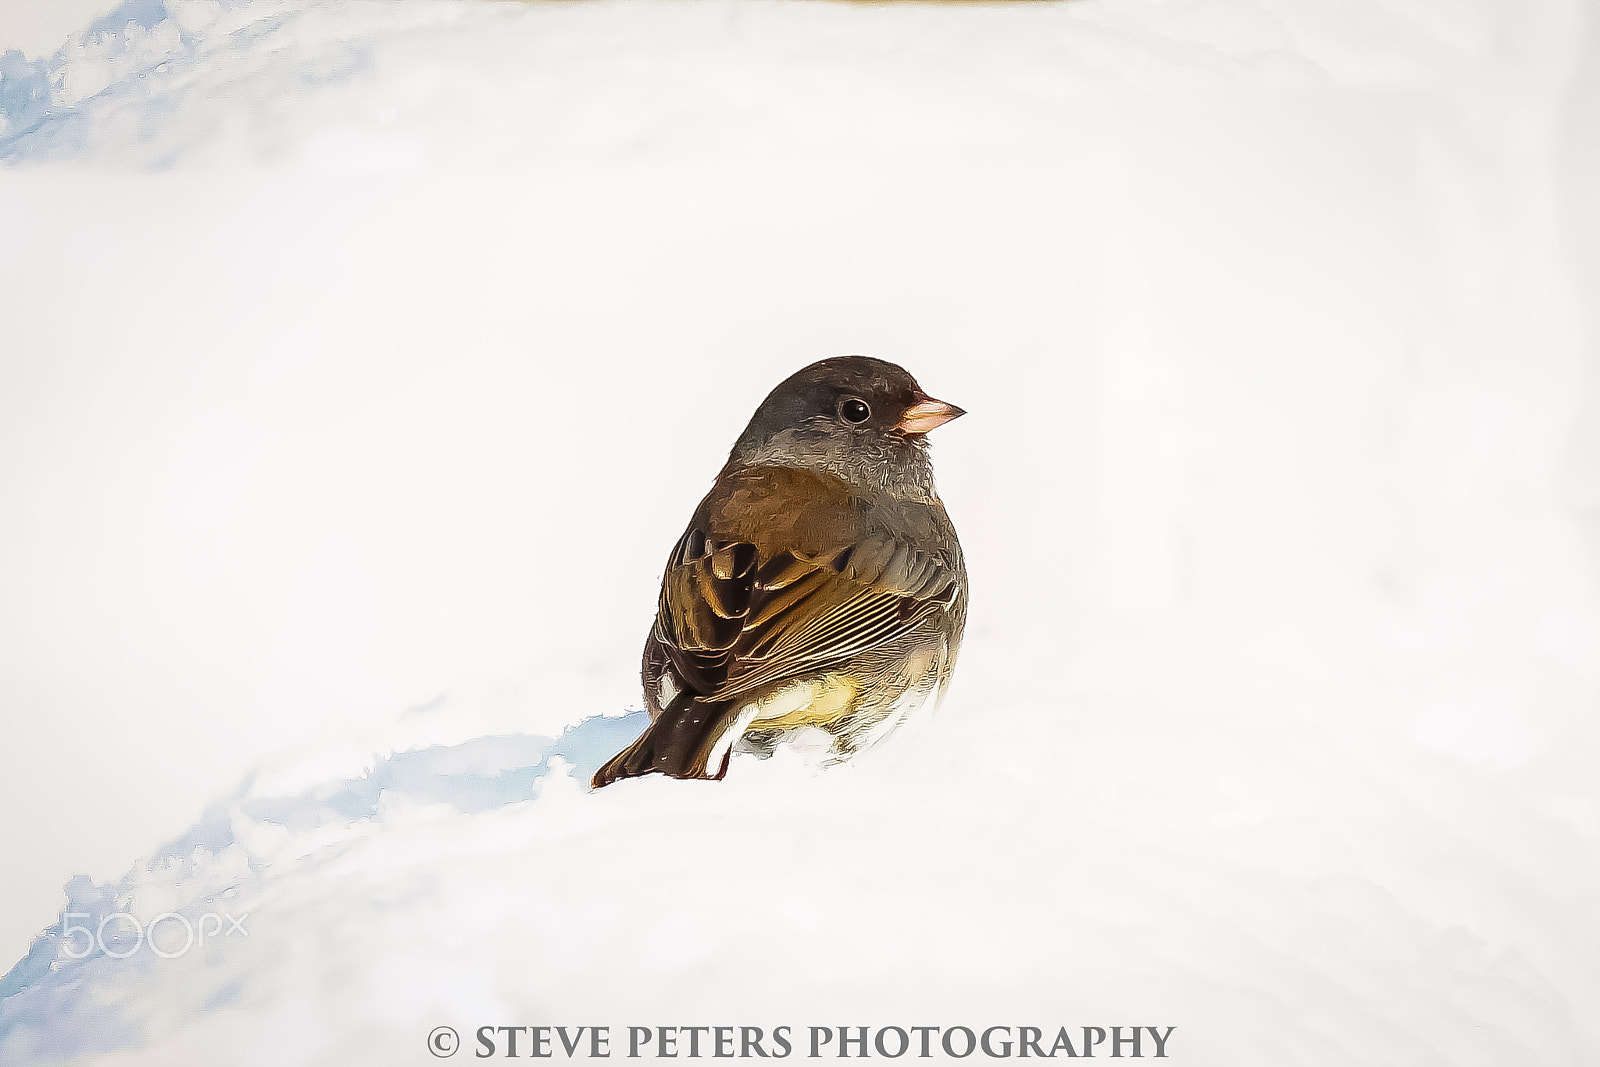 Sony SLT-A77 sample photo. Snow bird photography